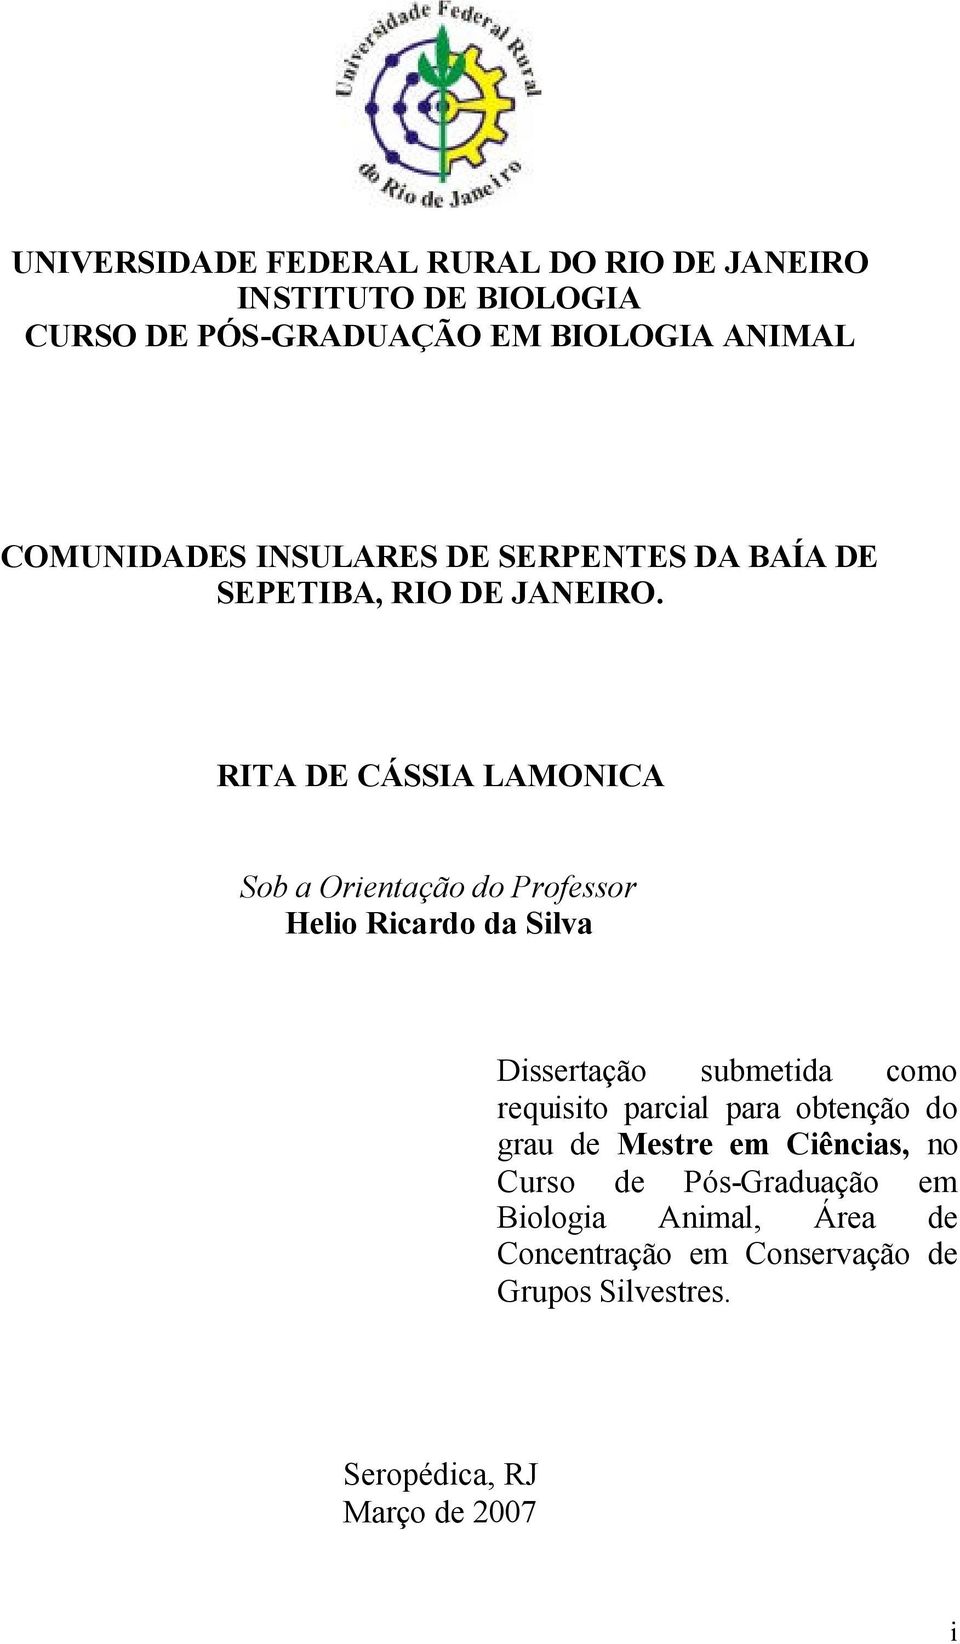 RITA DE CÁSSIA LAMONICA Sob a Orientação do Professor Helio Ricardo da Silva Dissertação submetida como requisito